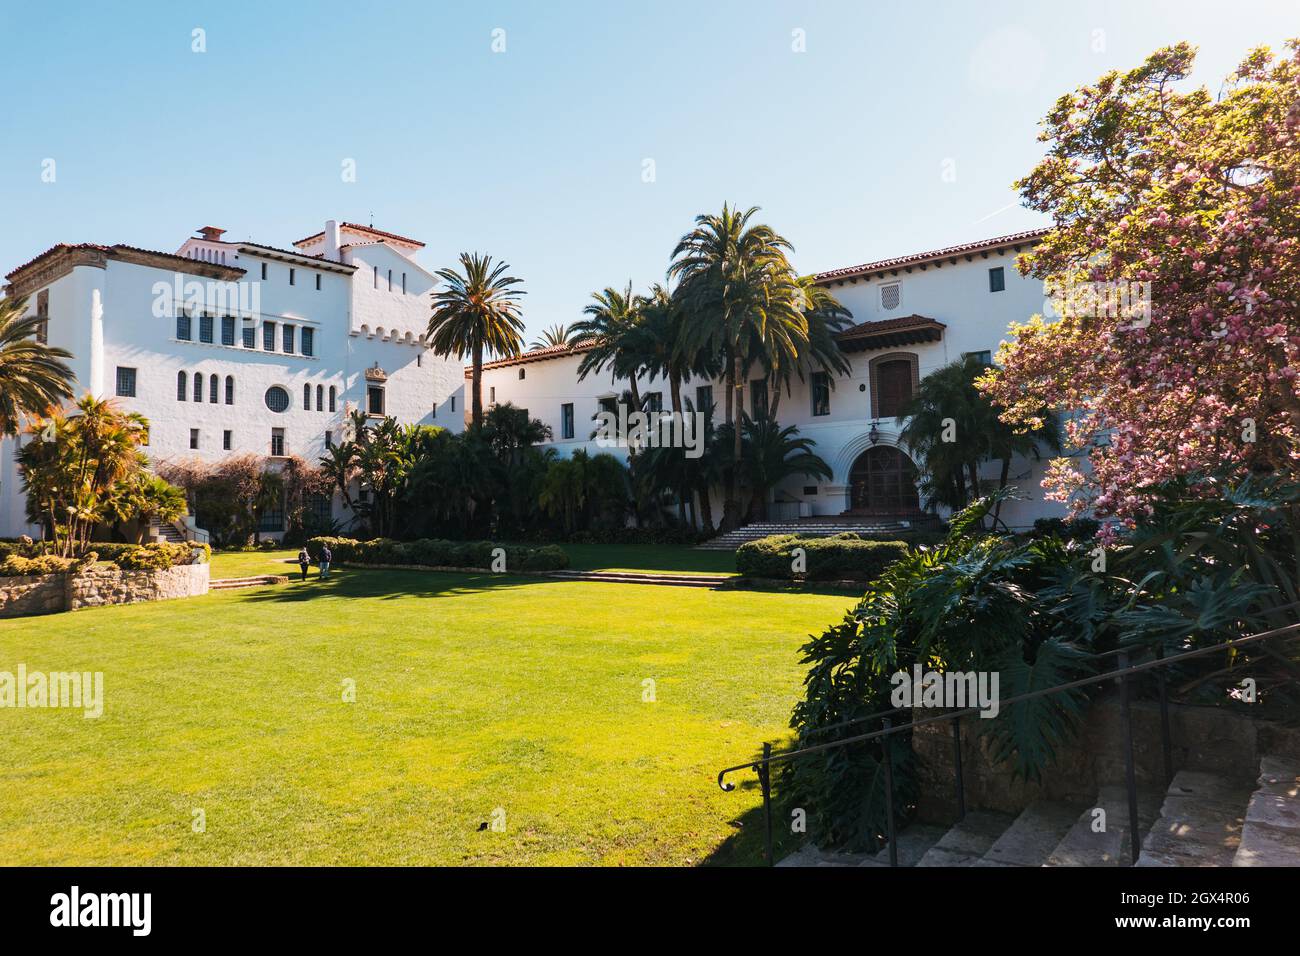 Im Innenhof und Garten des Santa Barbara County Courthouse im Stil der spanischen Kolonialzeit, Kalifornien, USA Stockfoto